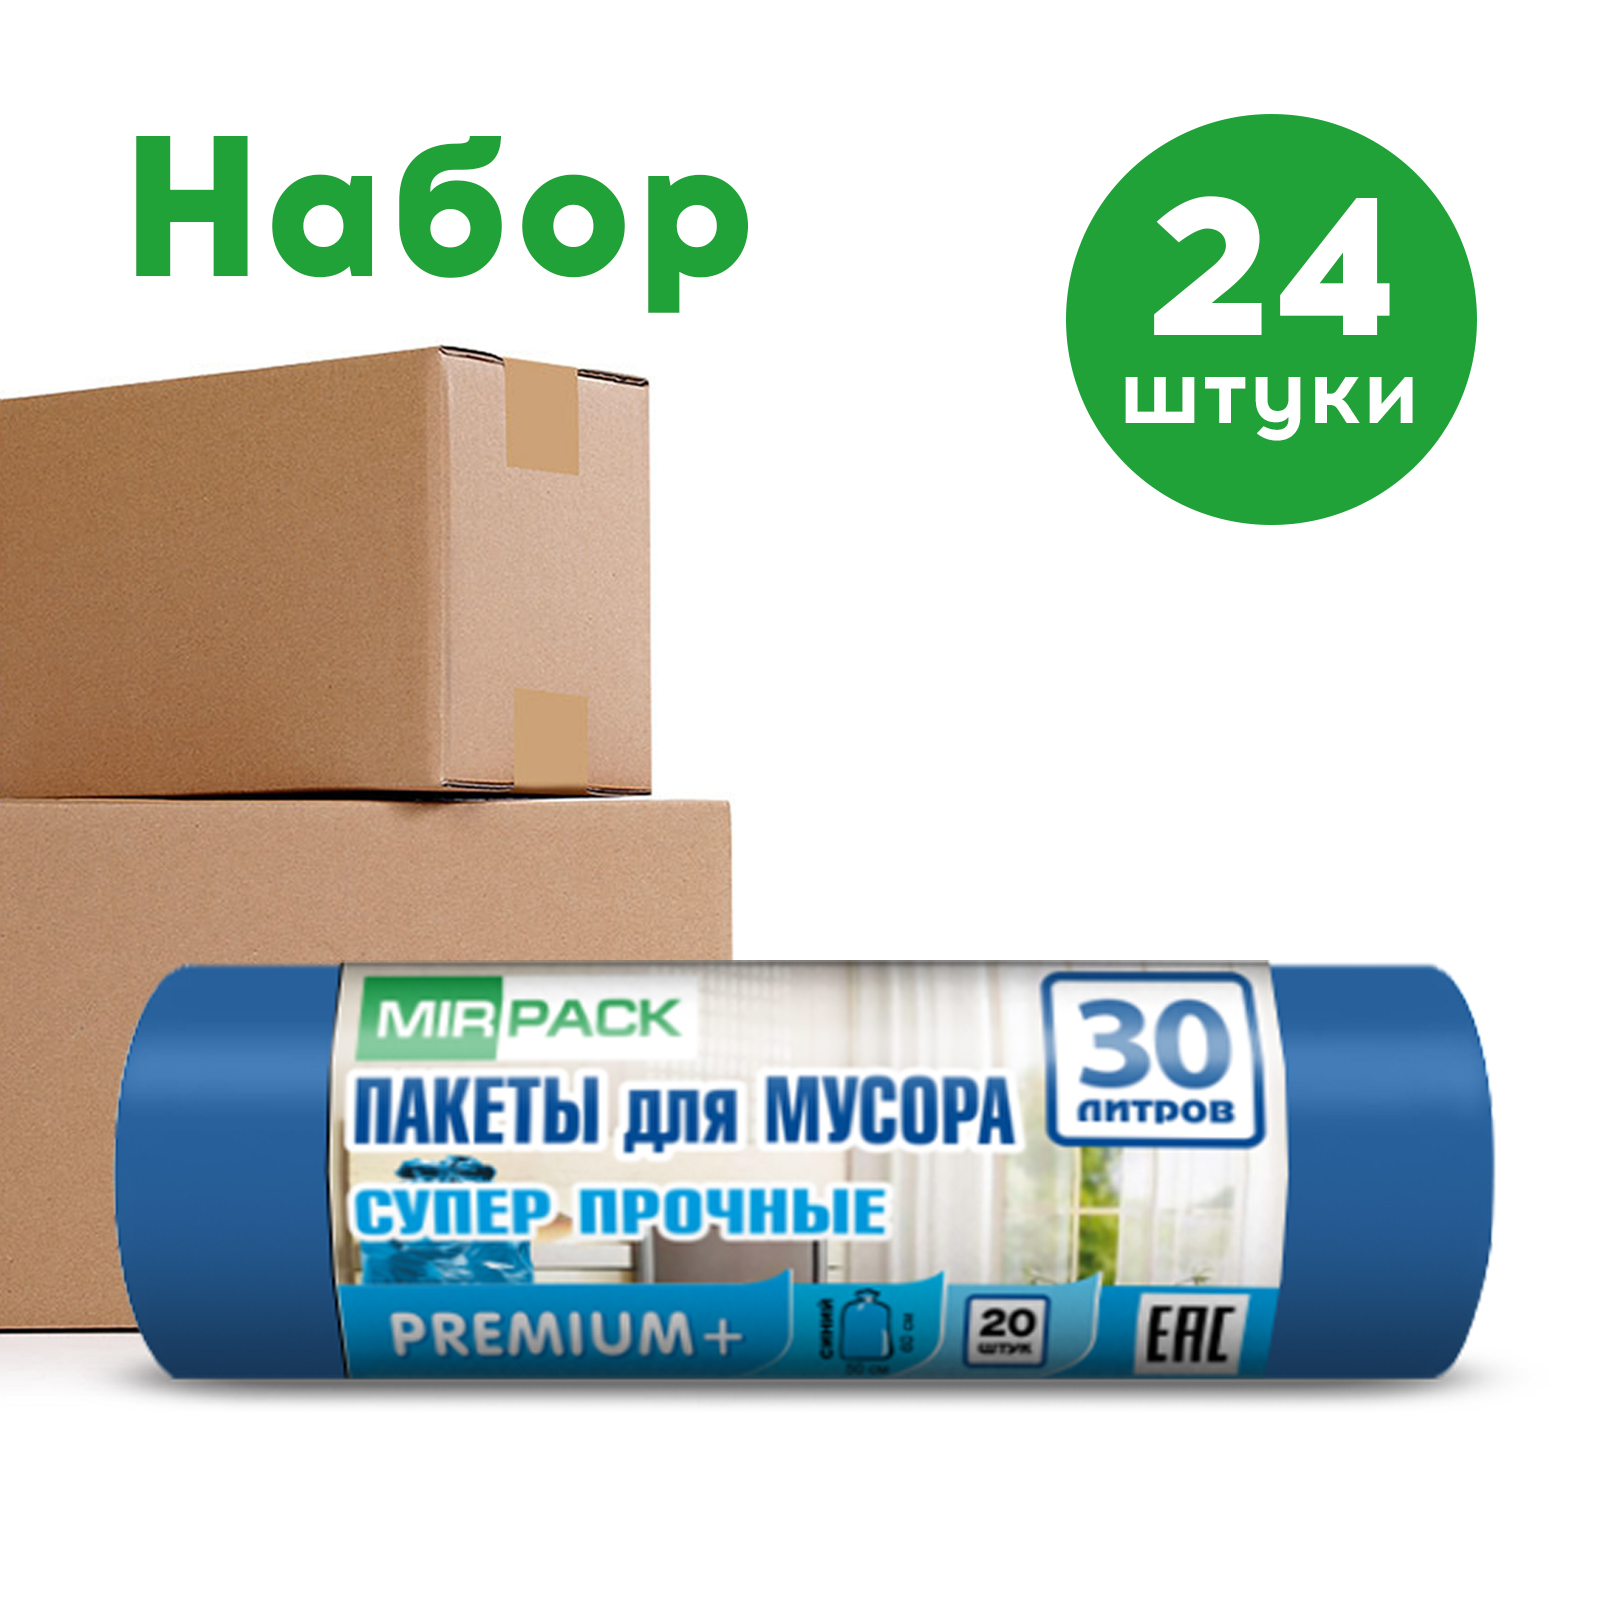 Мешки для мусора MIRPACK Premium+ синие 30 л, 24 упаковки по 20 шт